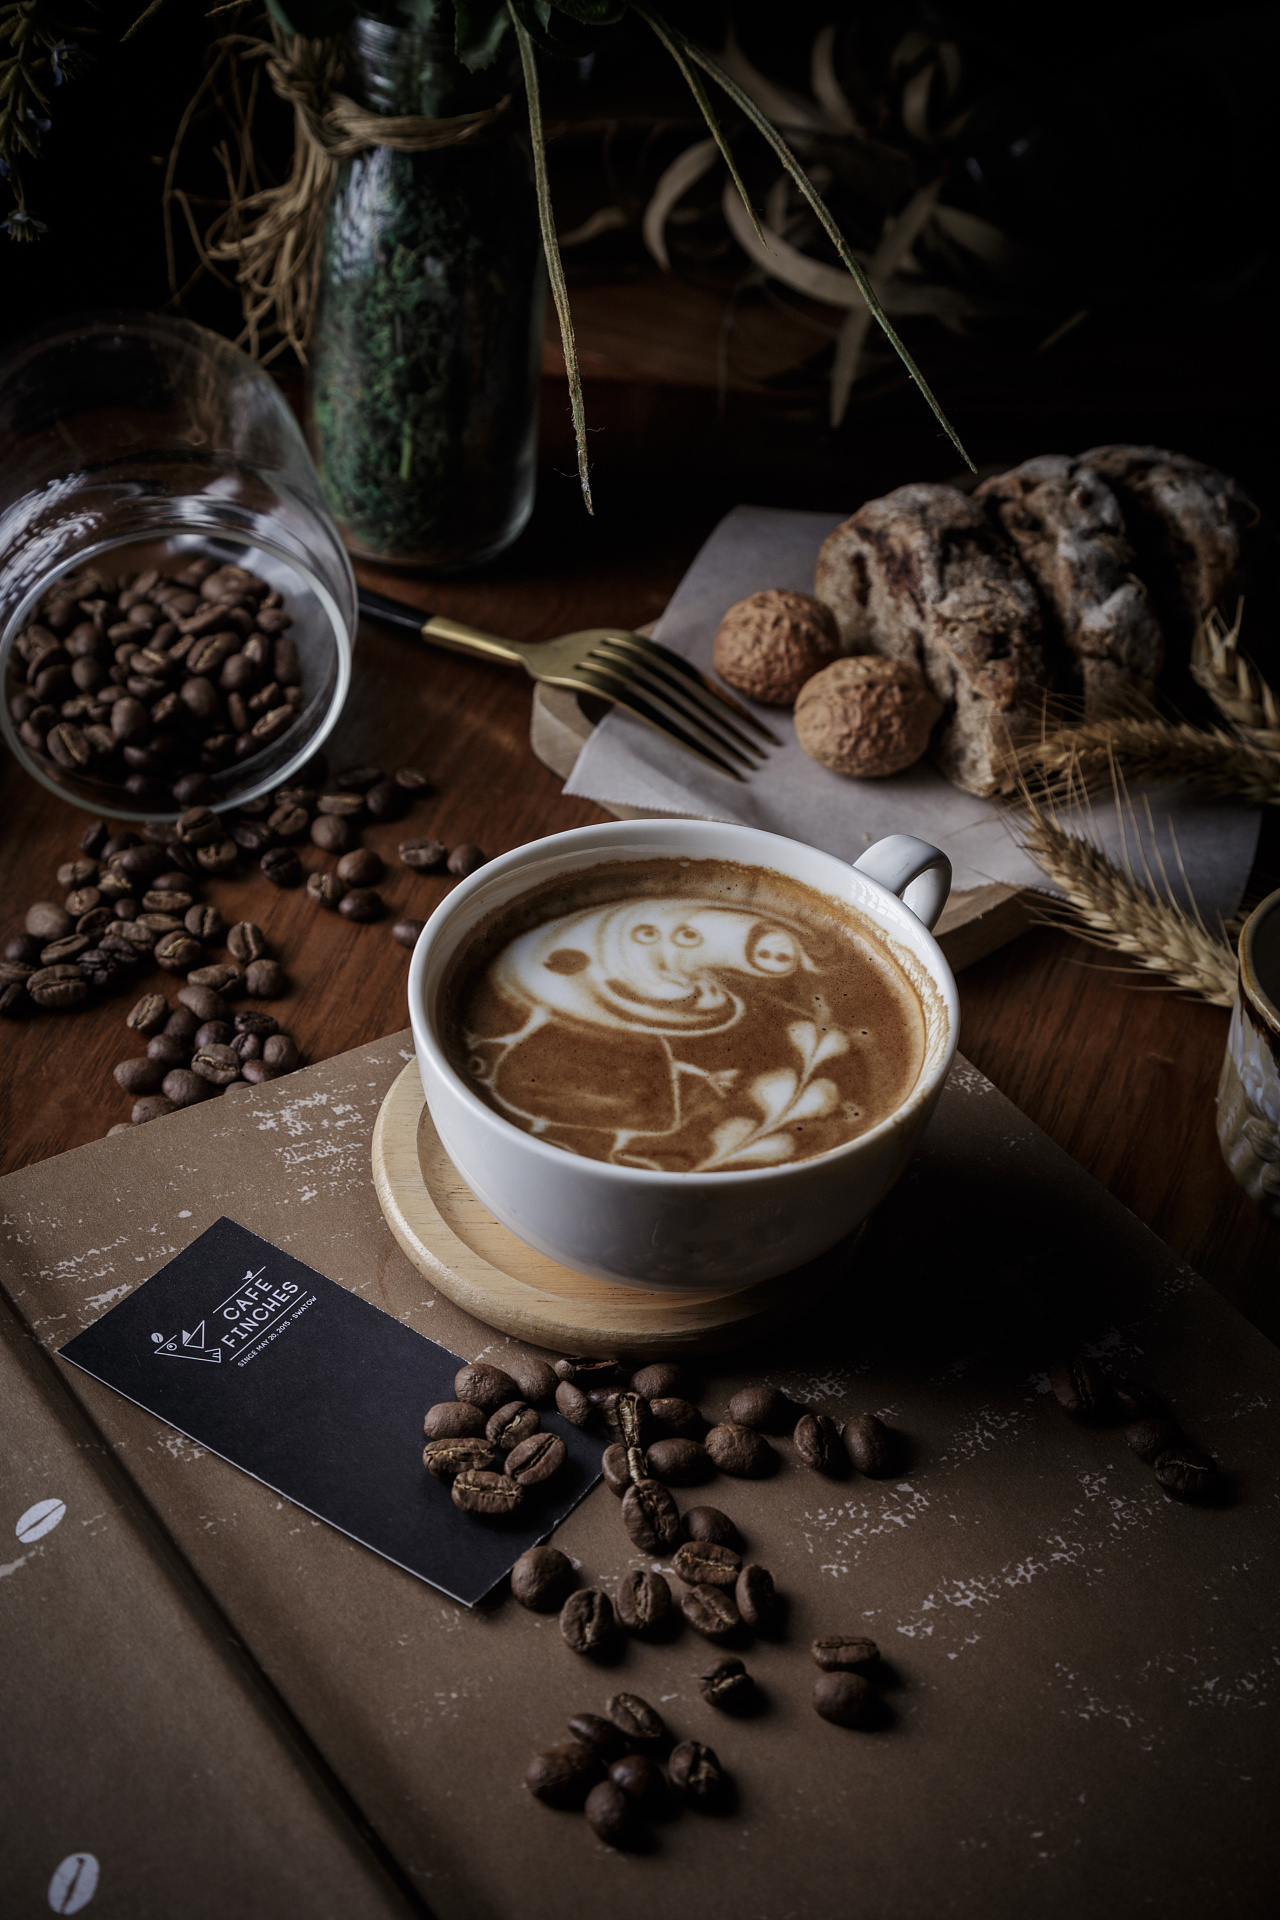 墨西哥咖啡豆起源 墨西哥咖啡历史故事讲解 中国咖啡网 05月15日更新